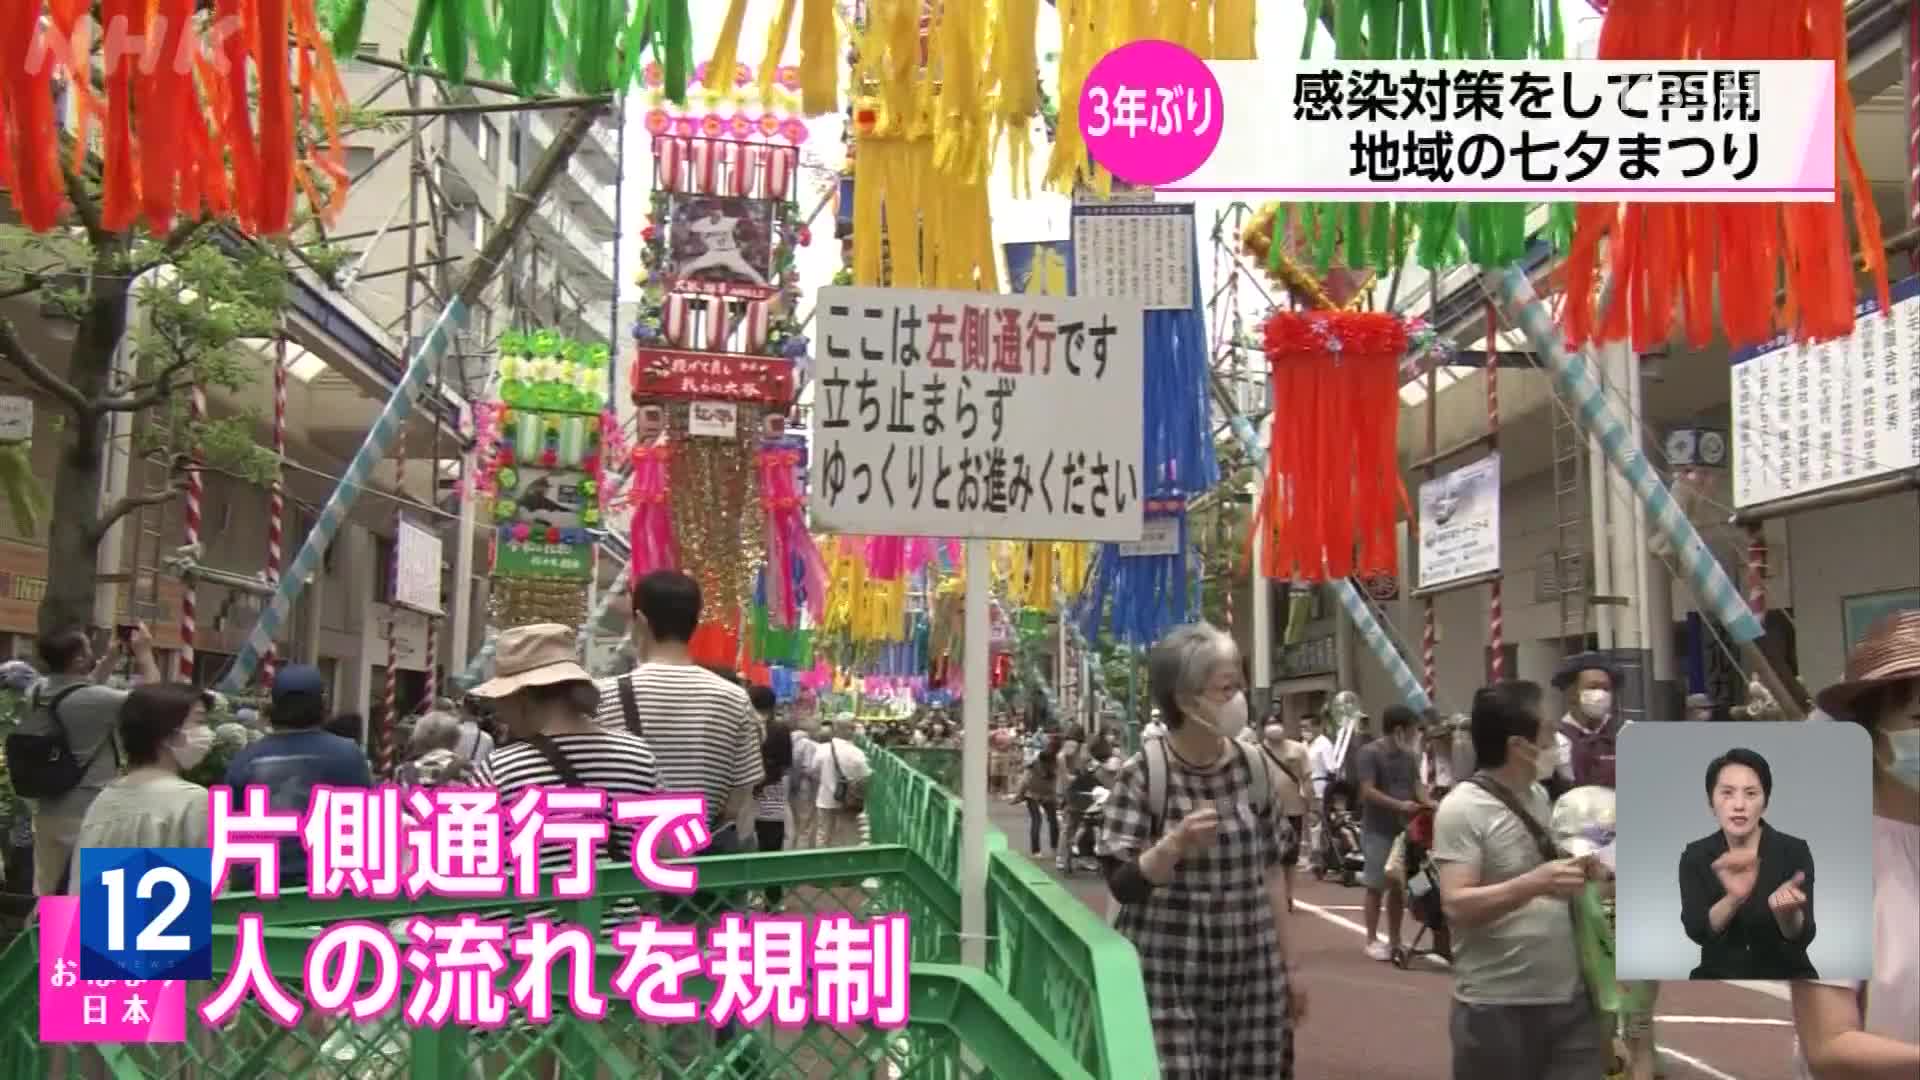 일본, 코로나 재확산 속에서 지역 전통축제 재개